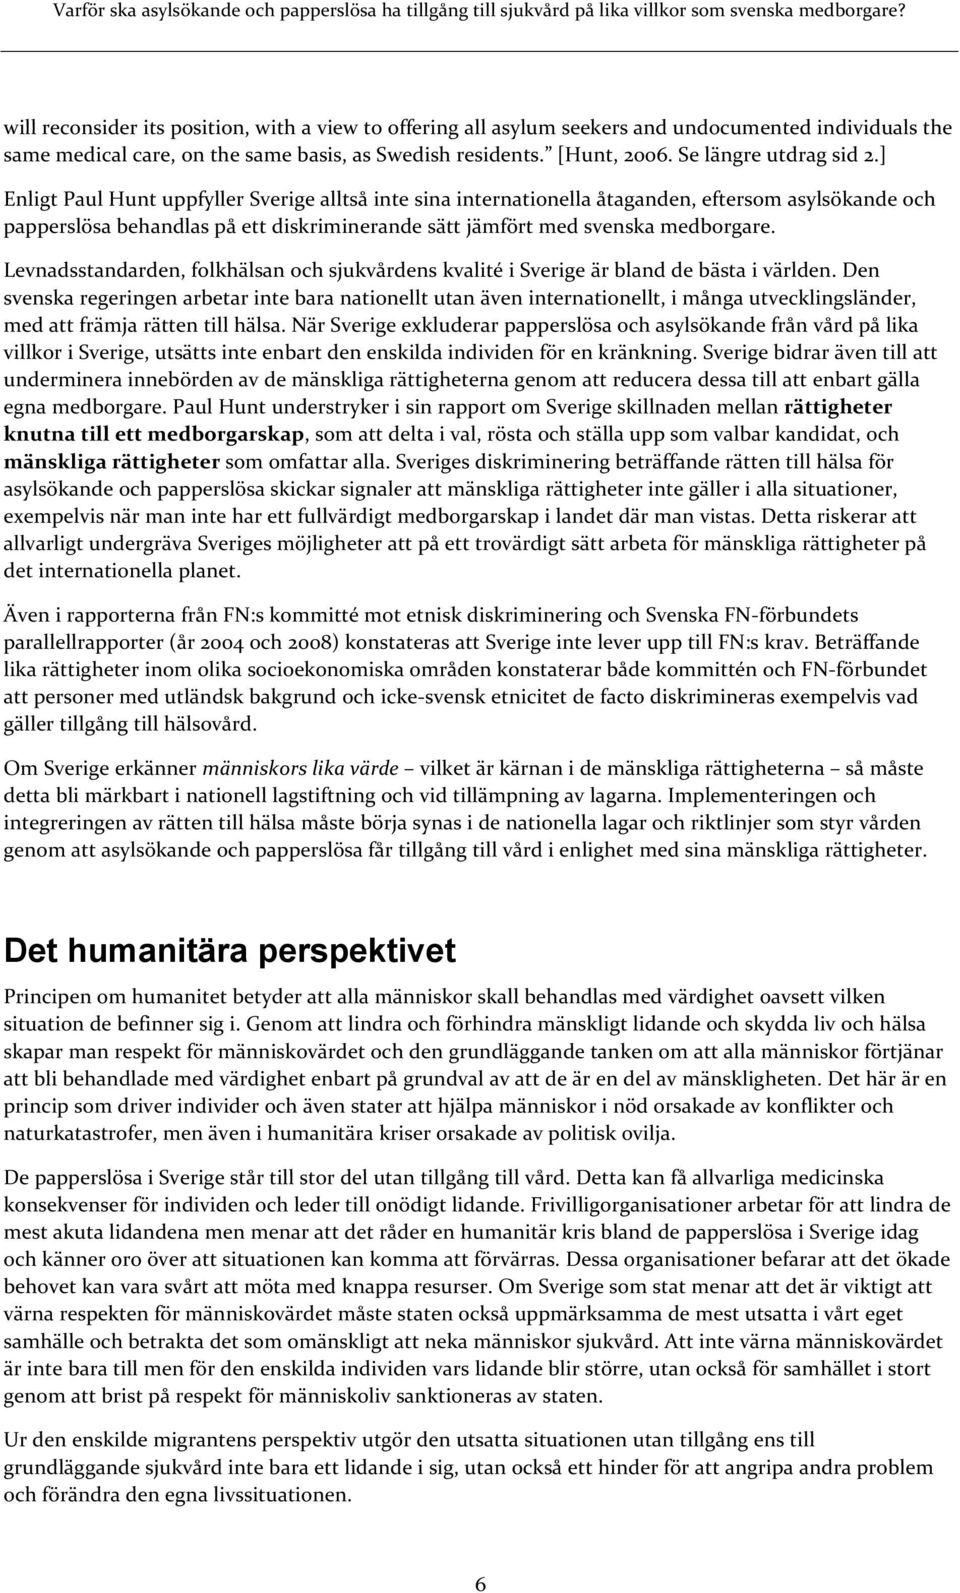 ] Enligt Paul Hunt uppfyller Sverige alltså inte sina internationella åtaganden, eftersom asylsökande och papperslösa behandlas på ett diskriminerande sätt jämfört med svenska medborgare.